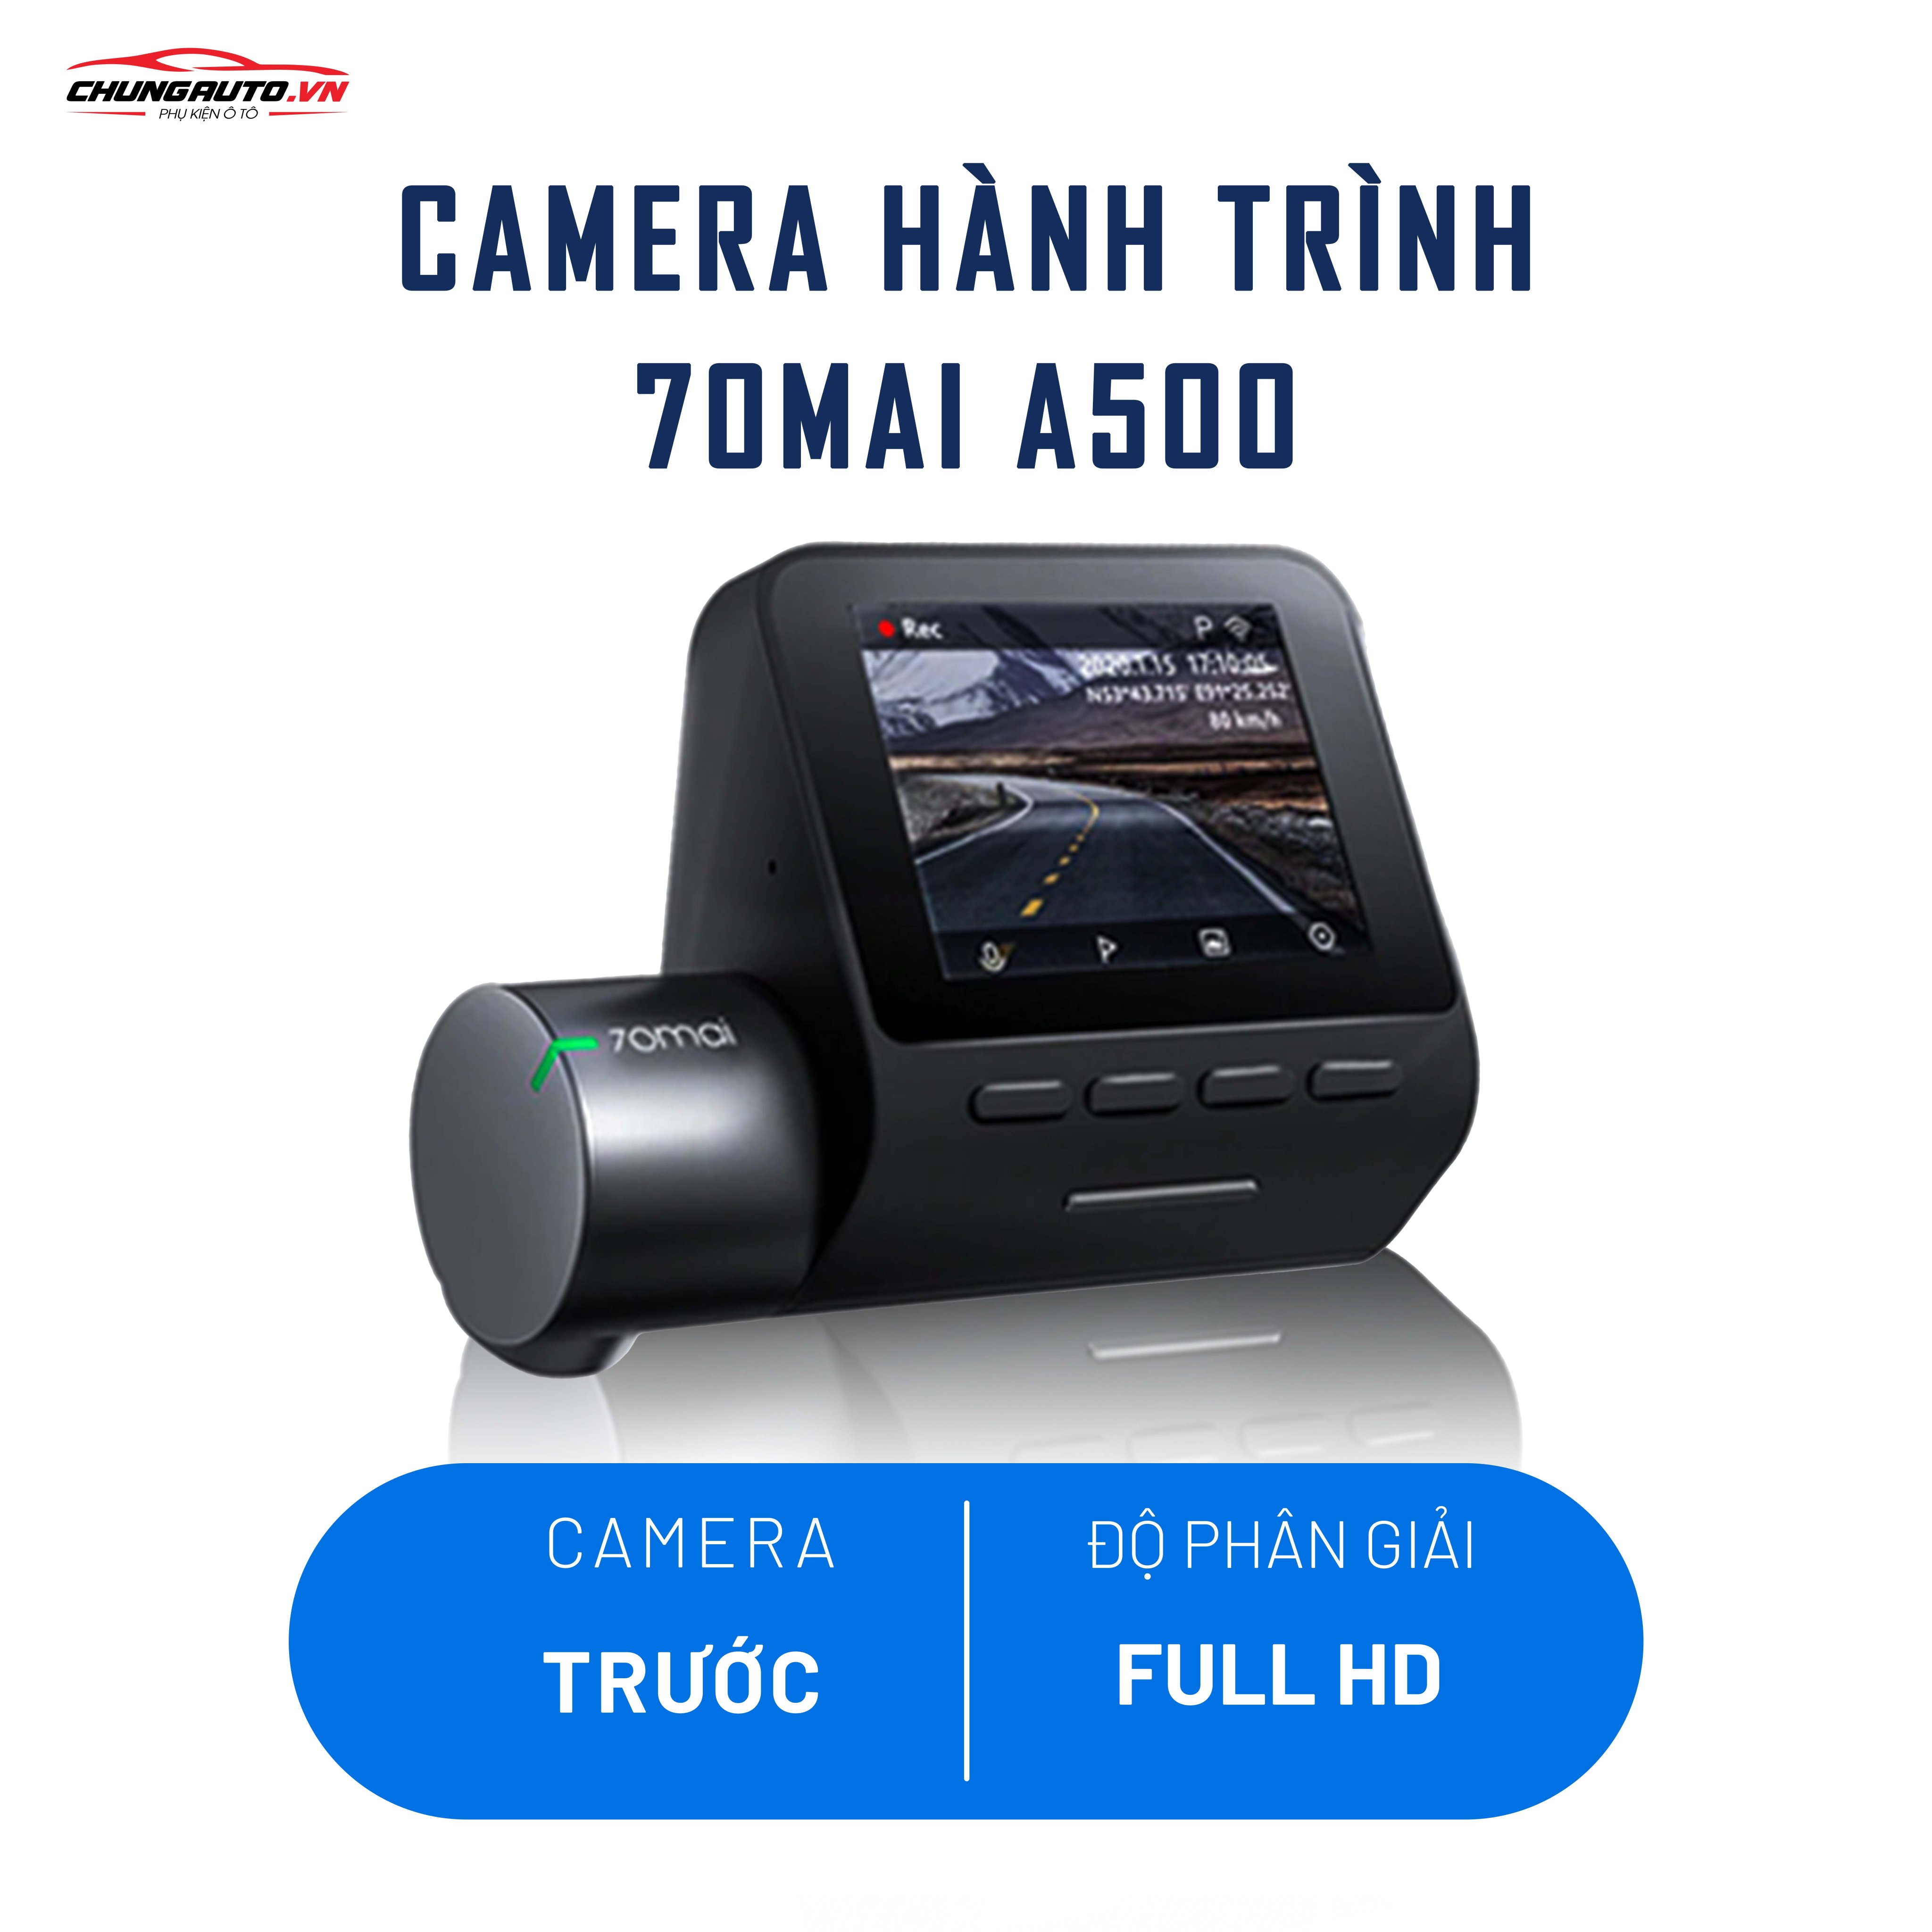 Camera Hành Trình 70Mai A500